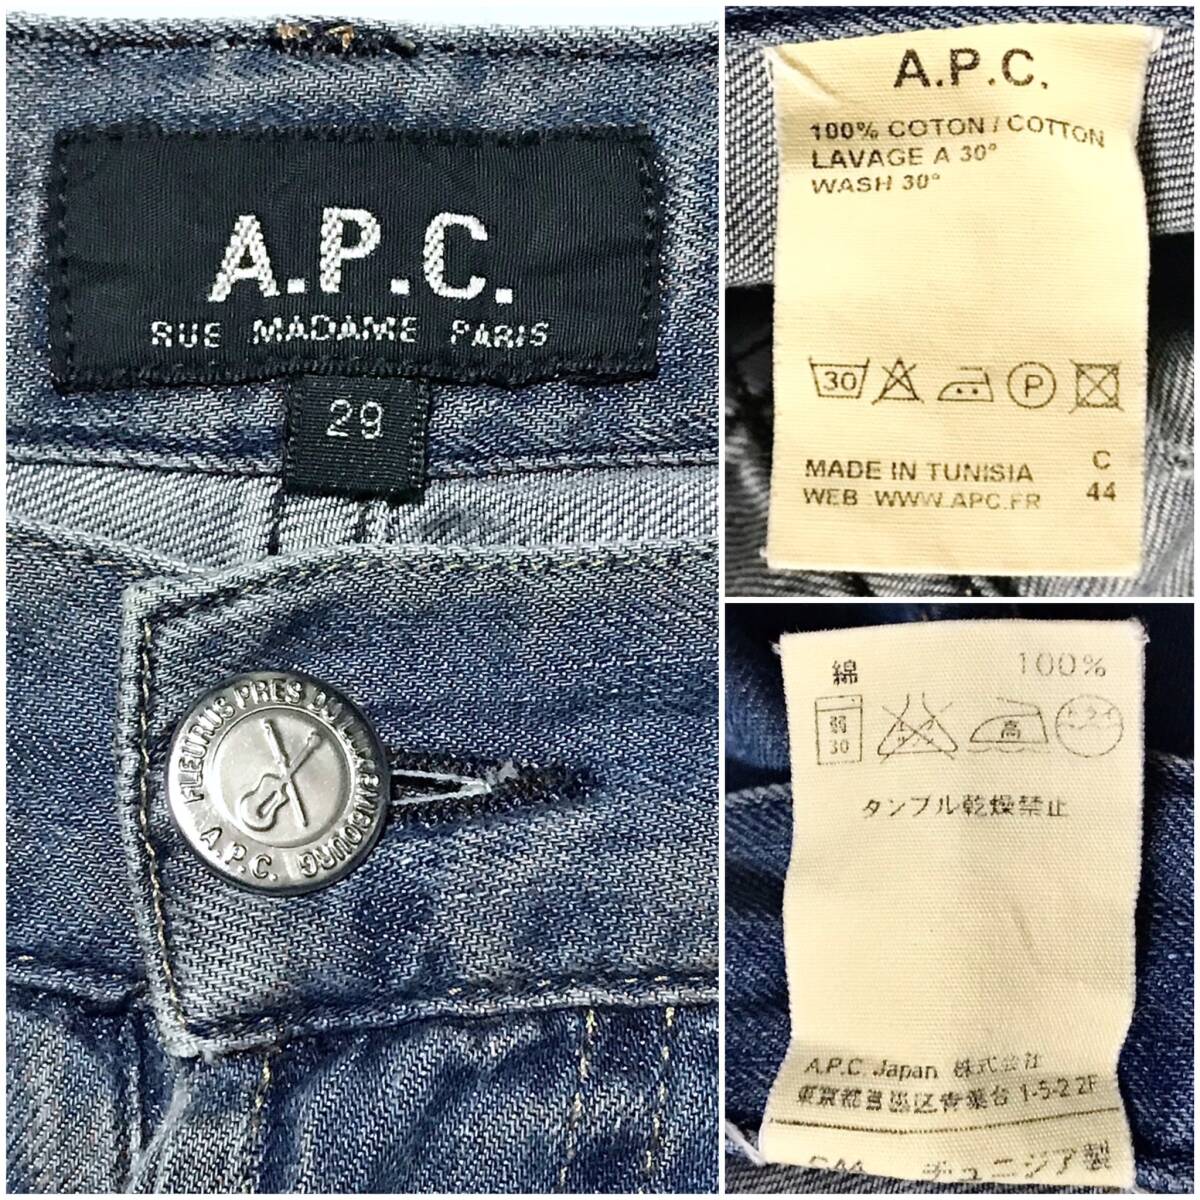  немедленная покупка бесплатная доставка * A.P.C A.P.C. обычная цена 2.6 десять тысяч иен степени Denim 29 джинсы распорка стандартный за границей бренд select do женский Work милитари 